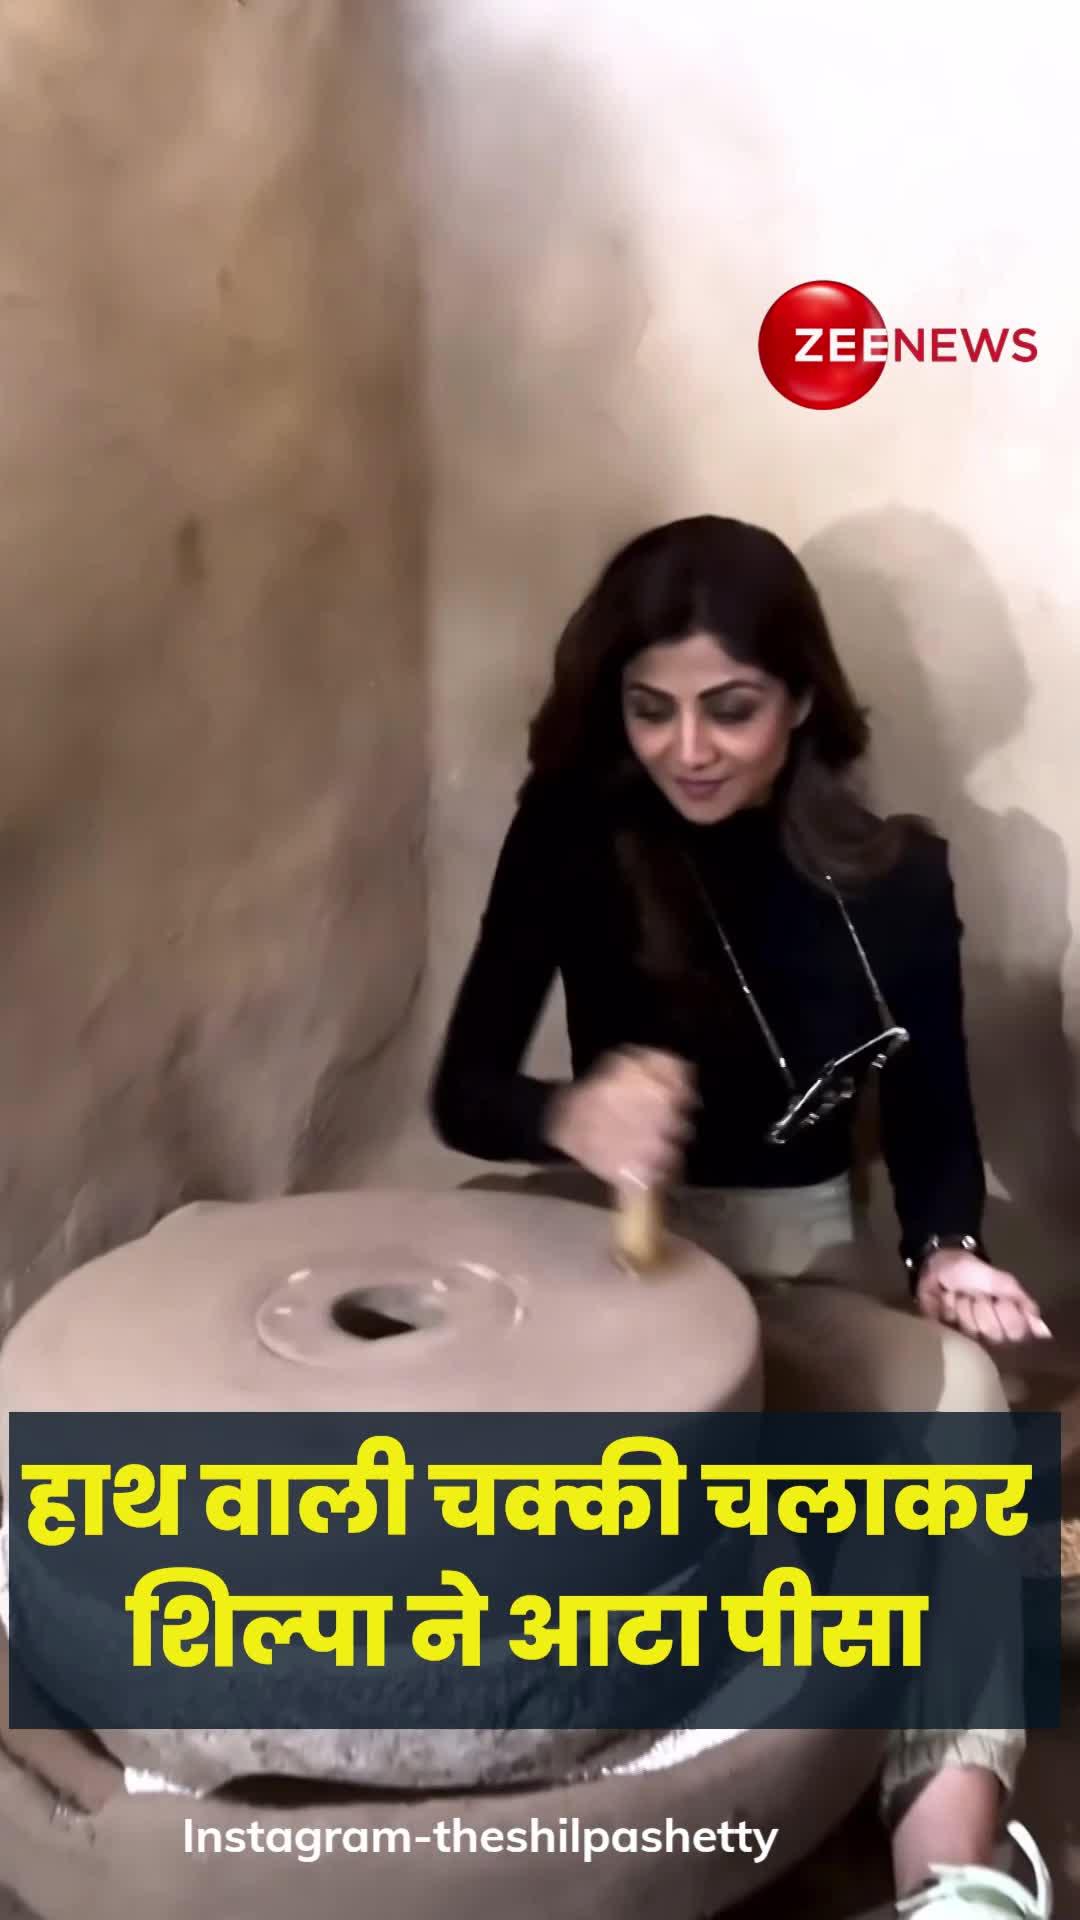 VIDEO: आटा चक्की चलाती नजर आईं शिल्पा शेट्टी, फैन्स भी देखकर हुए हैरान